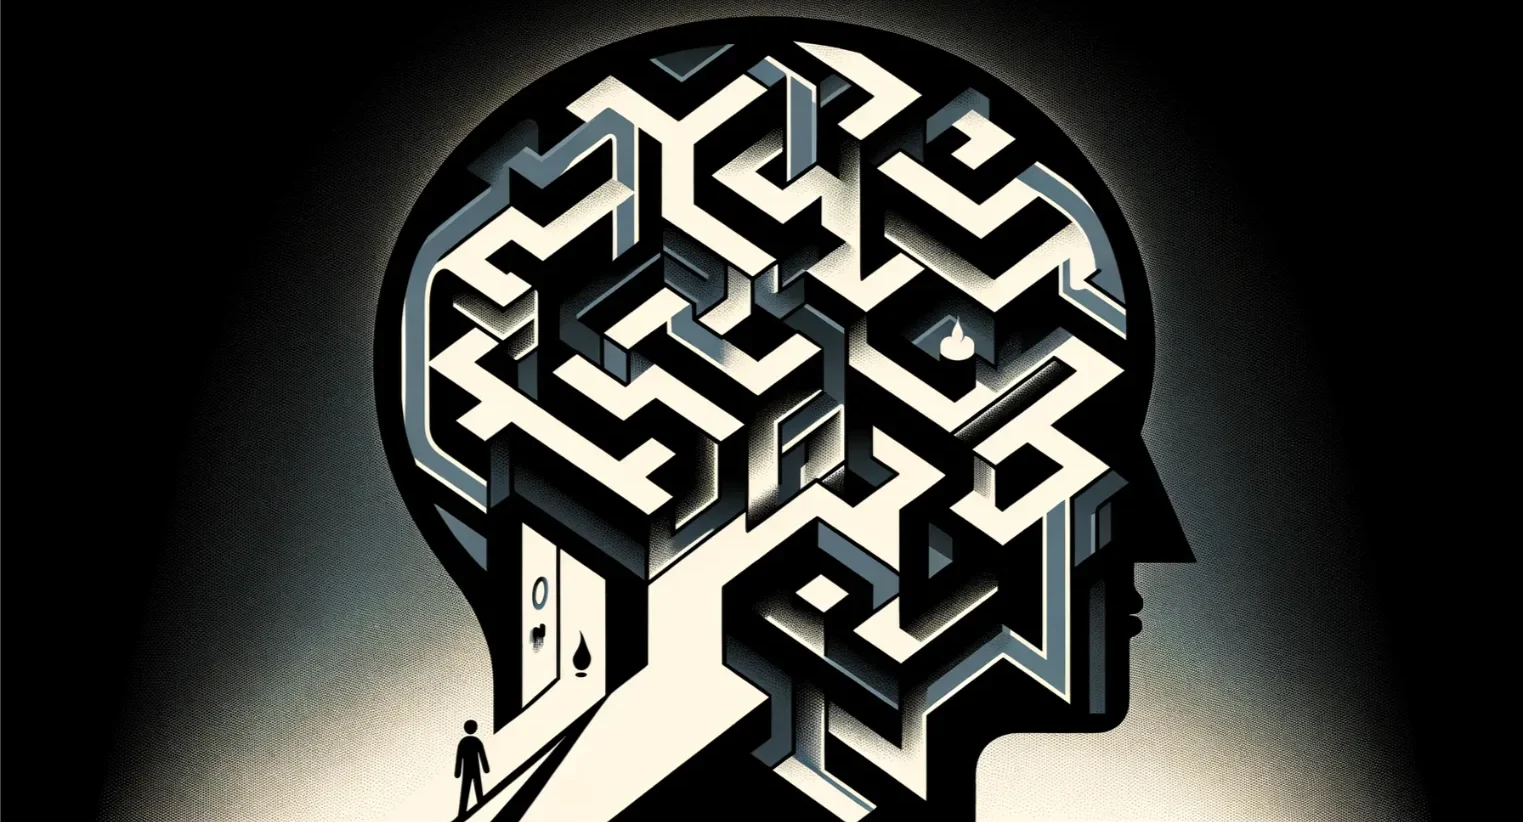 en labyrint av ens eget sinne och psyke